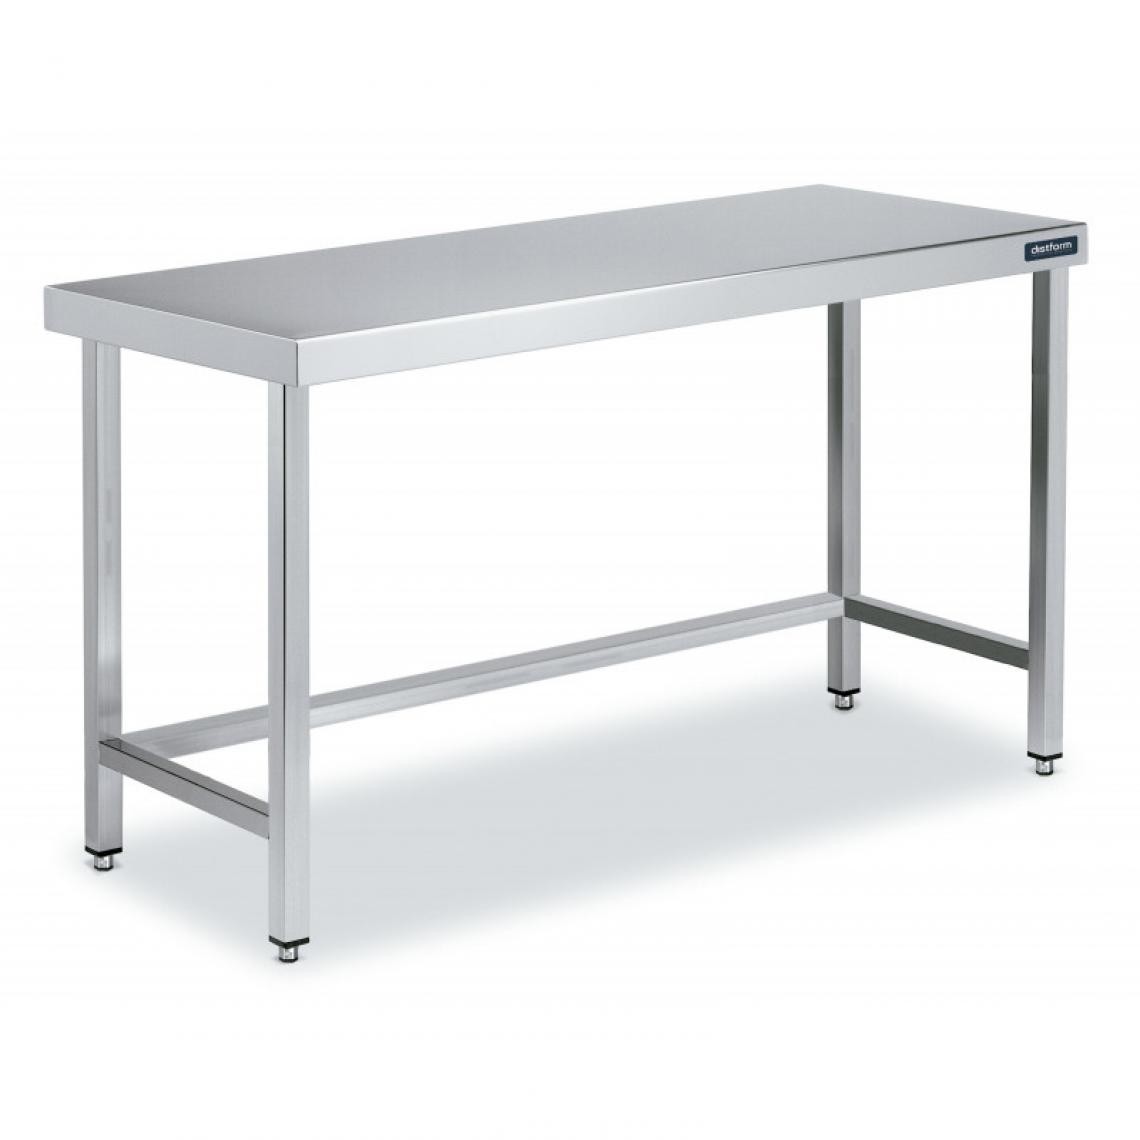 DISTFORM - Table Centrale en Inox avec renforts Profondeur 600mm - Distform - Acier inoxydable1900x600 - Tables à manger